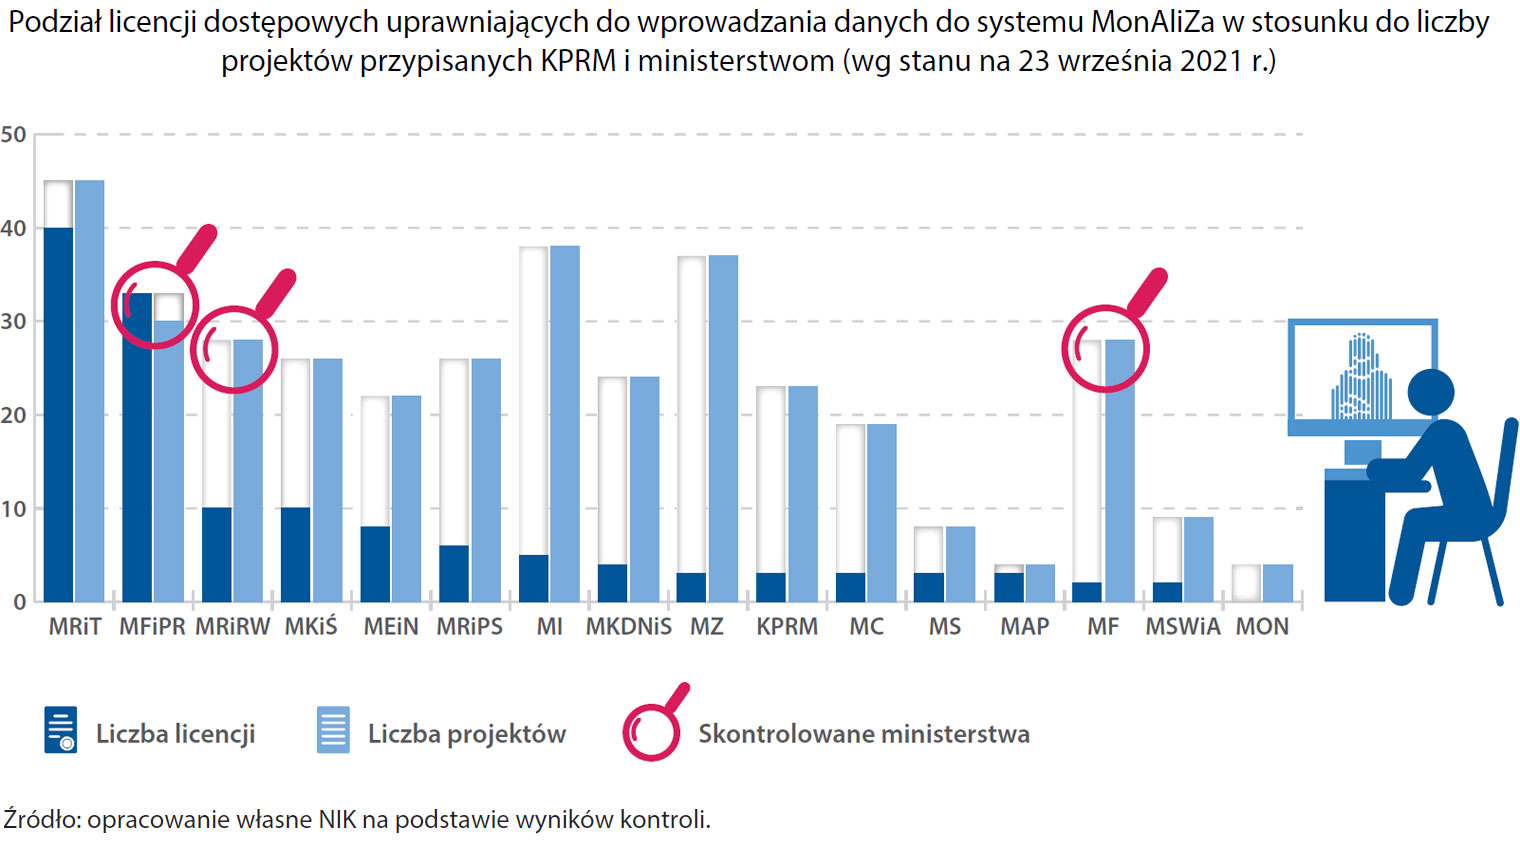 Podział licencji dostępowych uprawniających do wprowadzania danych do systemu MonAliZa w stosunku do liczby projektów przypisanych KPRM i ministerstwom (opis grafiki poniżej)